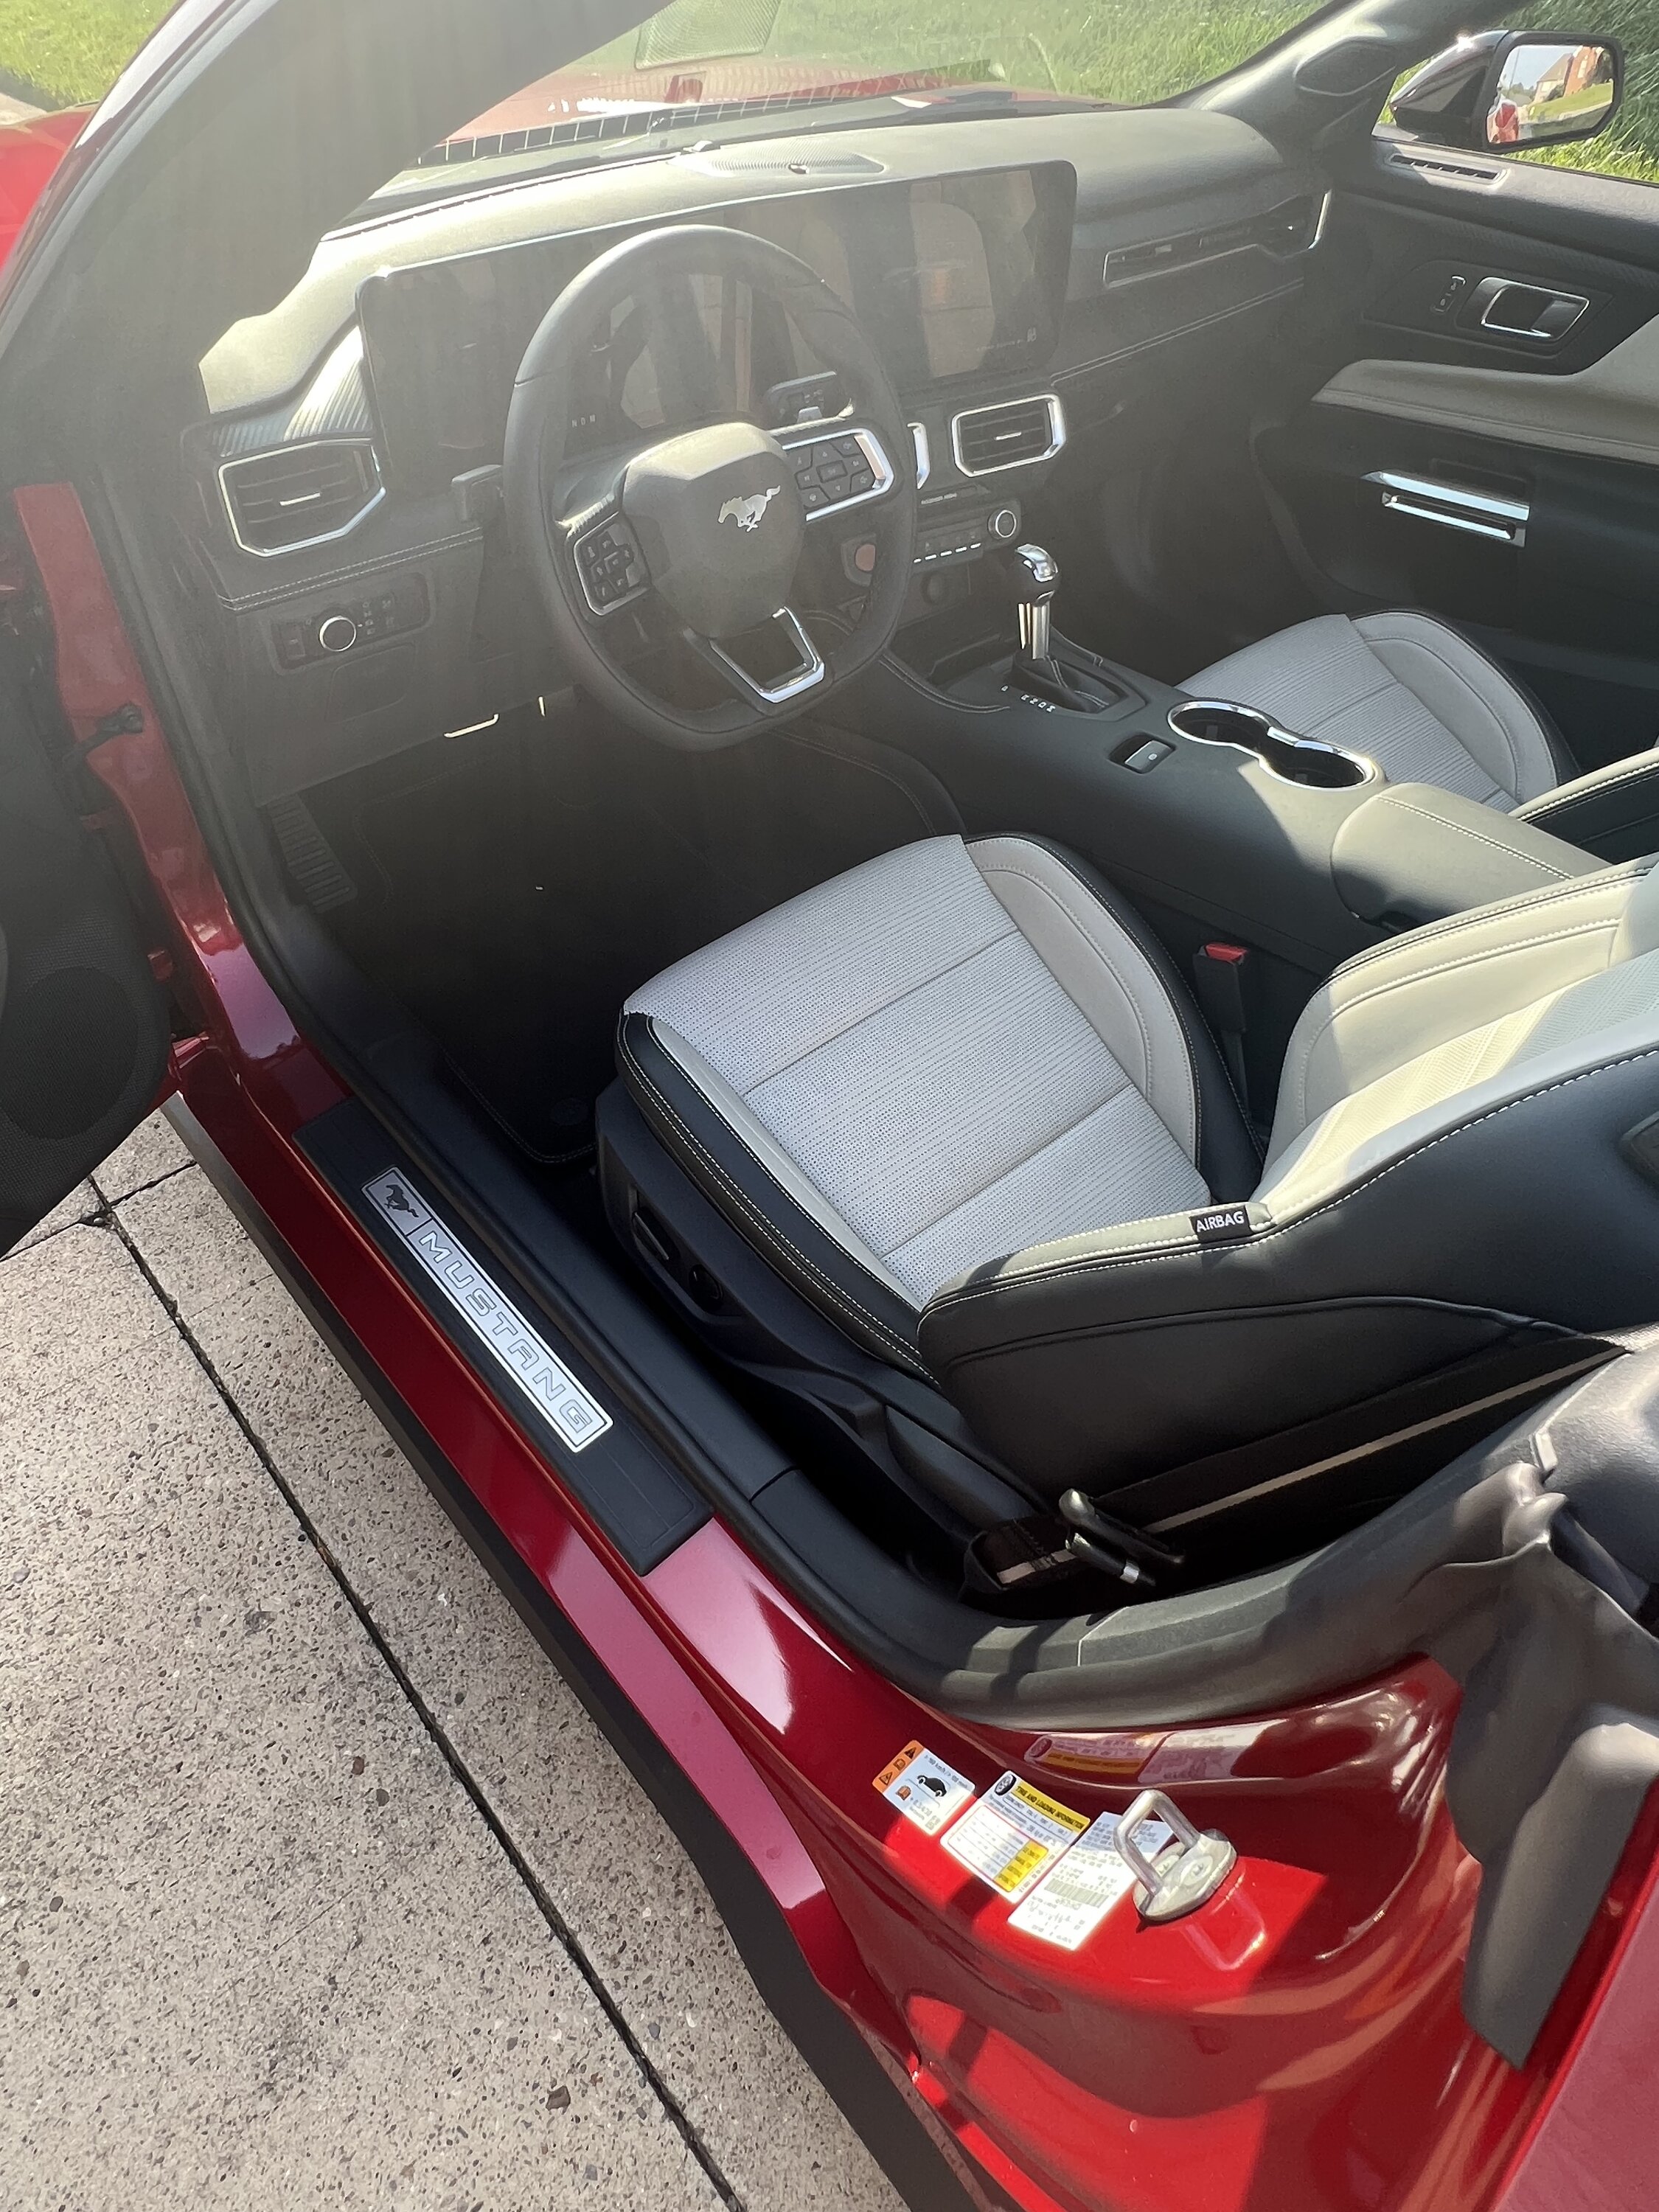 S650 Mustang Antzman’s GT Premium Convertible delivered! C2